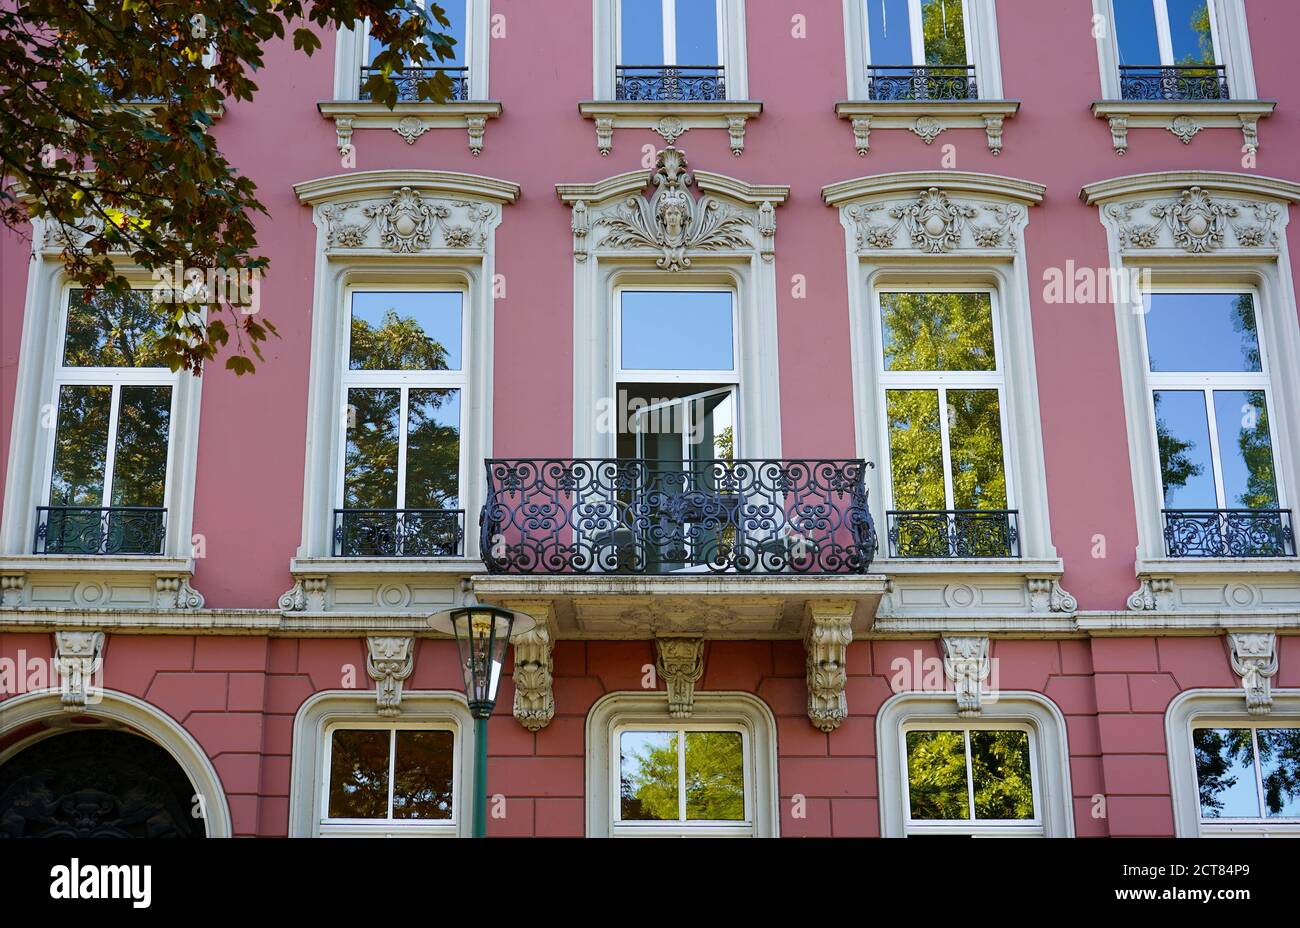 Romántica fachada de color rosa de la casa con balcón de metal y marcos de ventanas blancas. Cielo azul y árboles que se reflejan en los cristales de la ventana. Foto de stock